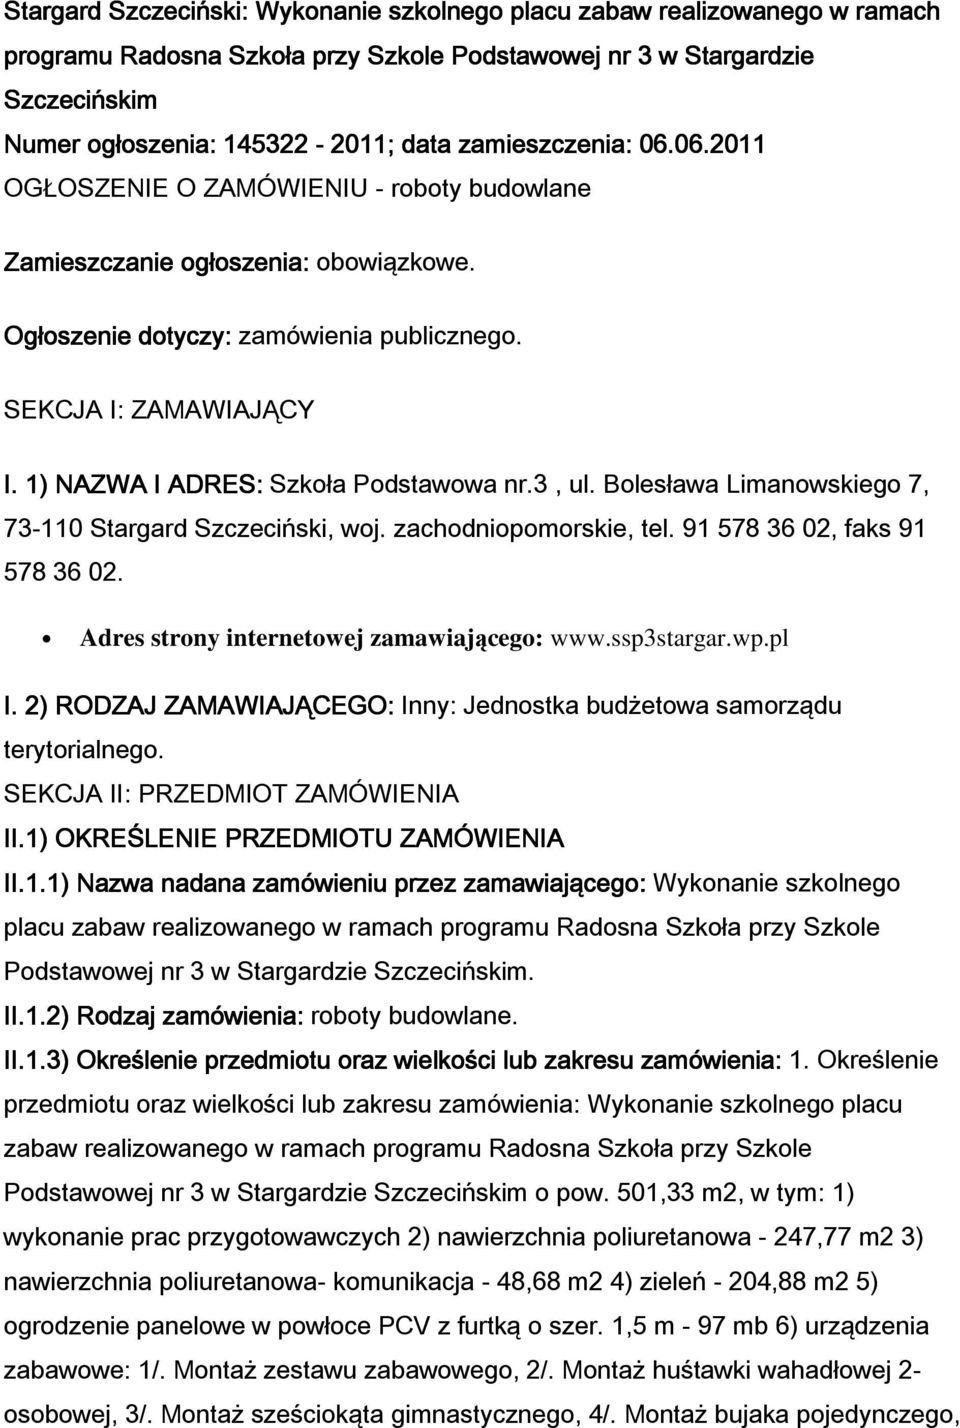 1) NAZWA I ADRES: Szkoła Podstawowa nr.3, ul. Bolesława Limanowskiego 7, 73-110 Stargard Szczeciński, woj. zachodniopomorskie, tel. 91 578 36 02, faks 91 578 36 02.